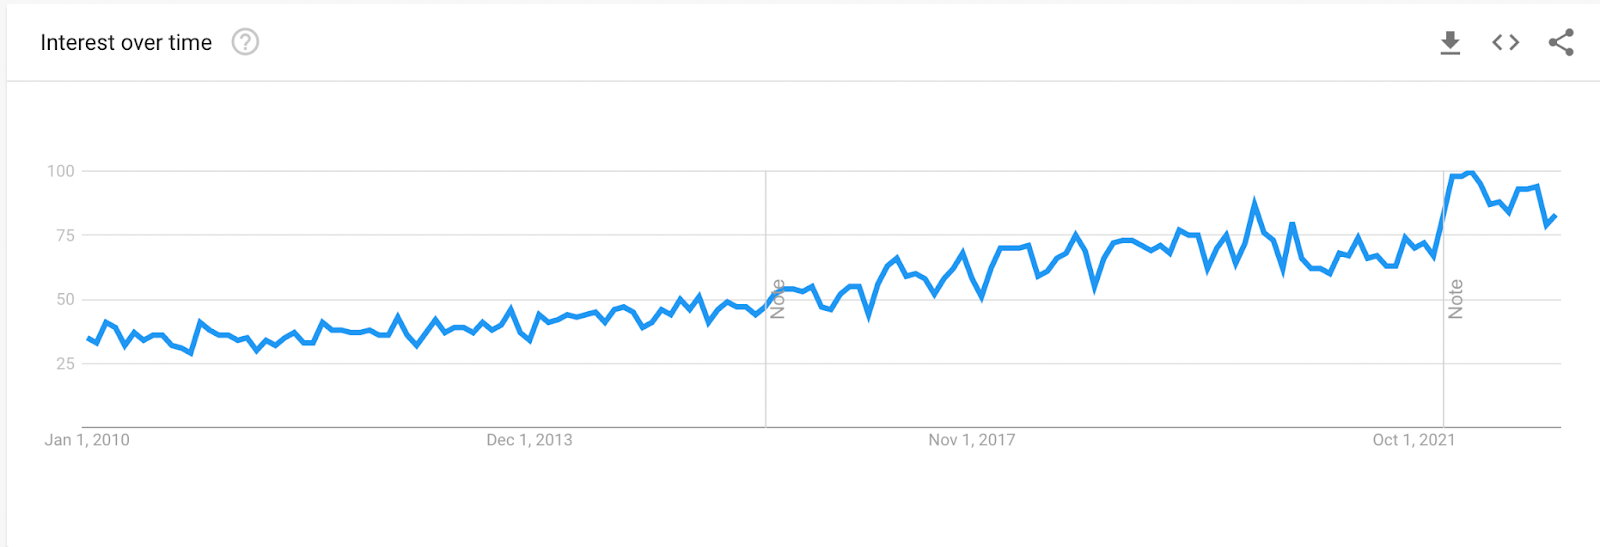 trend data driven